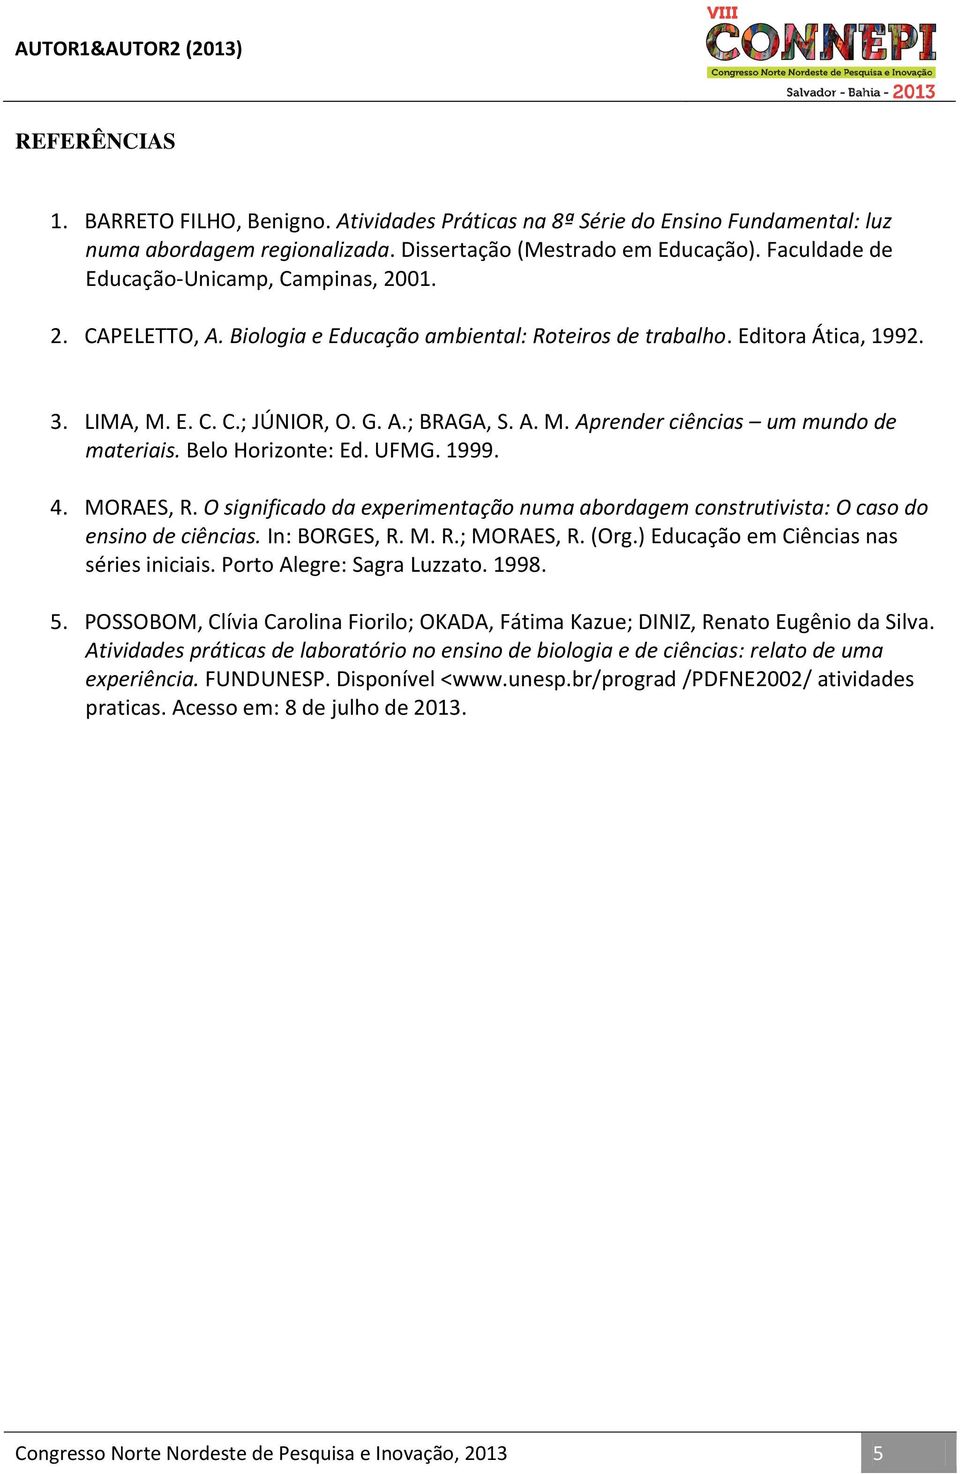 Belo Horizonte: Ed. UFMG. 1999. 4. MORAES, R. O significado da experimentação numa abordagem construtivista: O caso do ensino de ciências. In: BORGES, R. M. R.; MORAES, R. (Org.